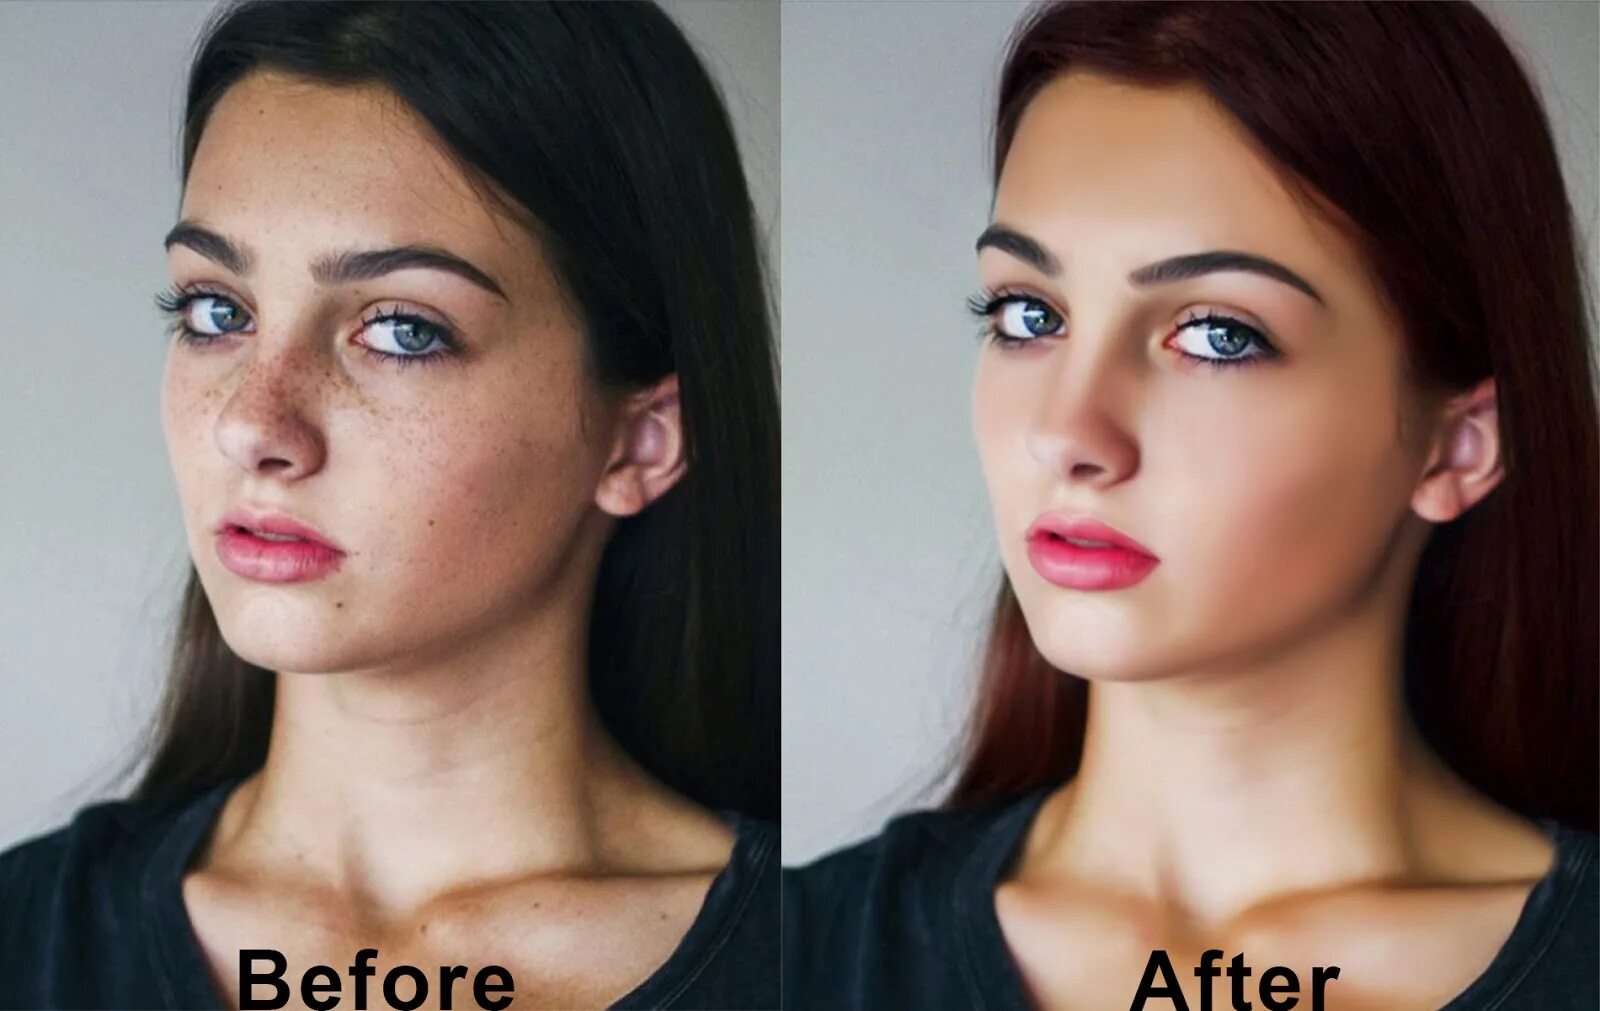 Photos before after. Увеличить качество фото. Улучшение качества фото до 4к. Before after фотошоп. Before after фото.